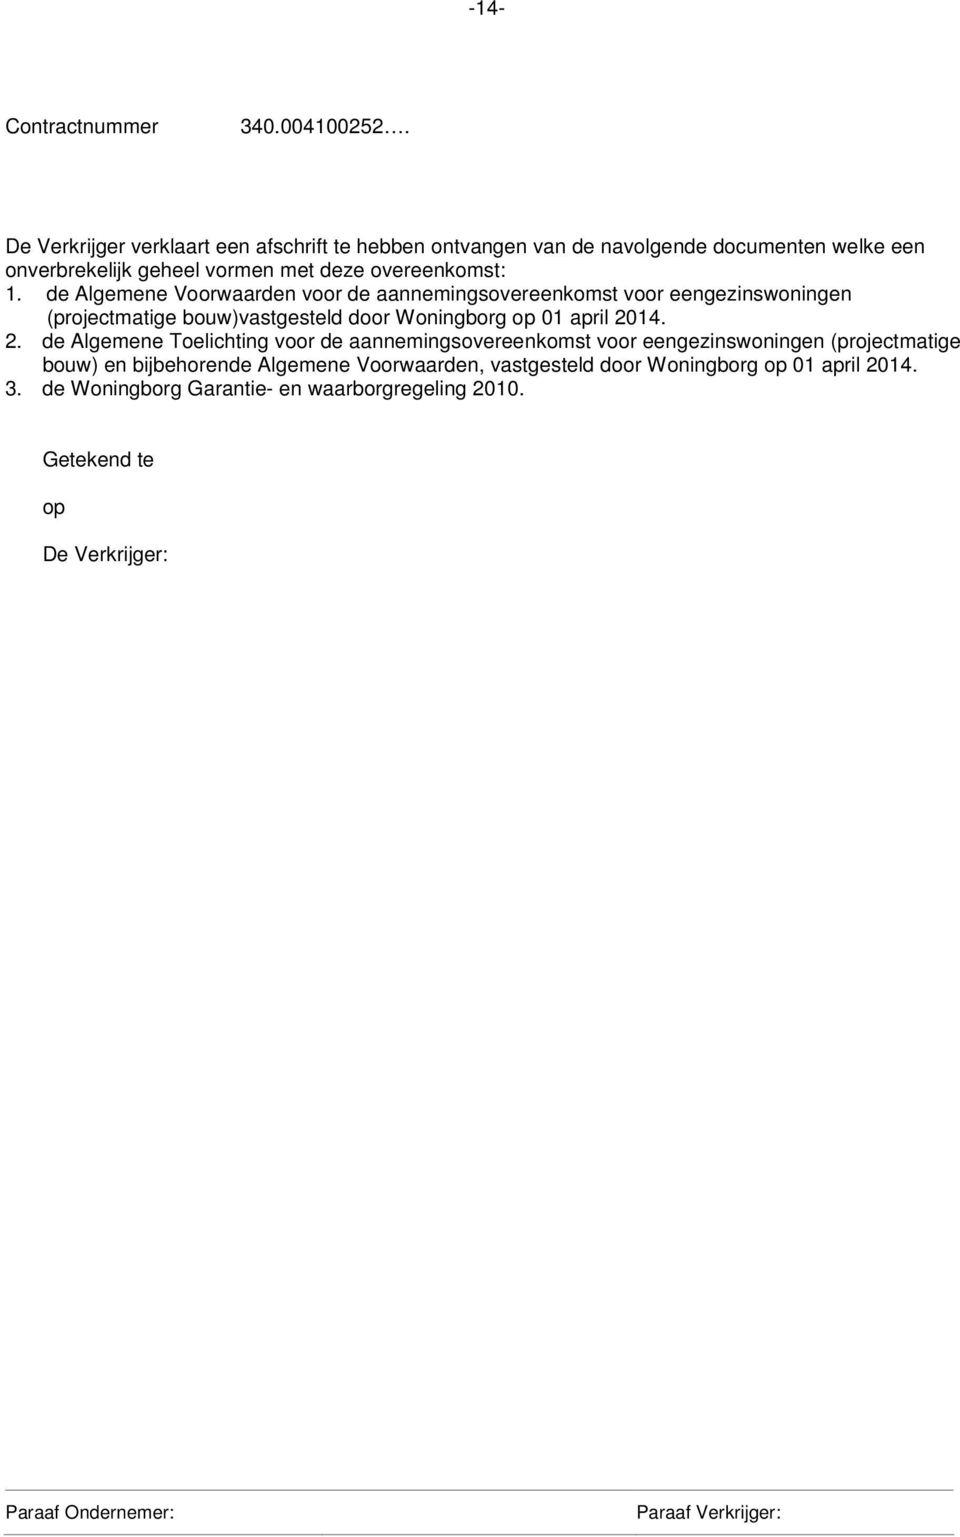 de Algemene Voorwaarden voor de aannemingsovereenkomst voor eengezinswoningen (projectmatige bouw)vastgesteld door Woningborg op 01 april 2014.